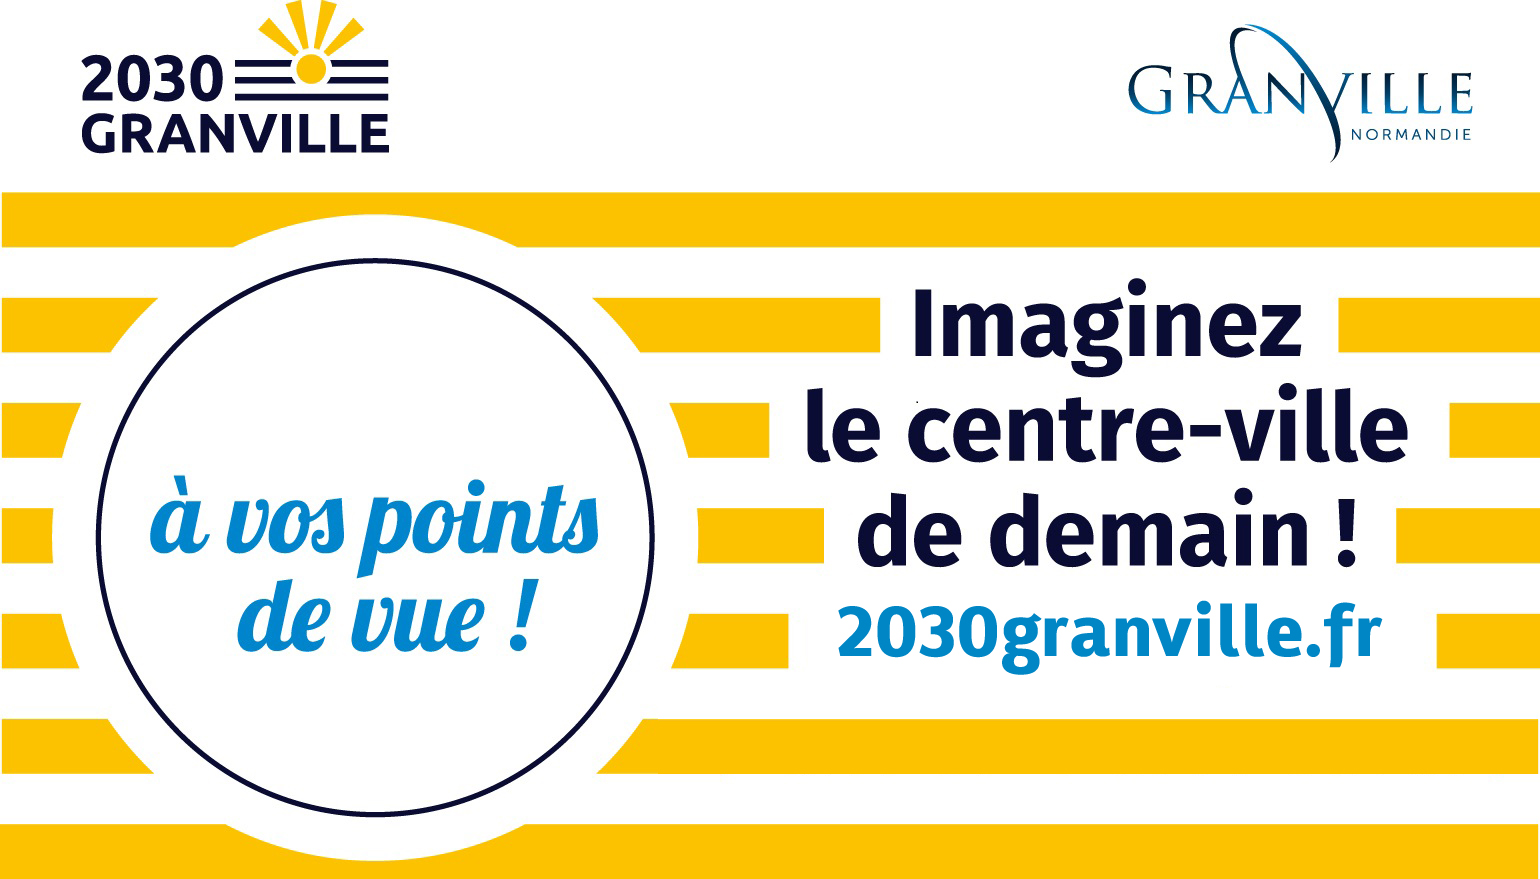 Exprimez-vous sur le site 2030granville.fr